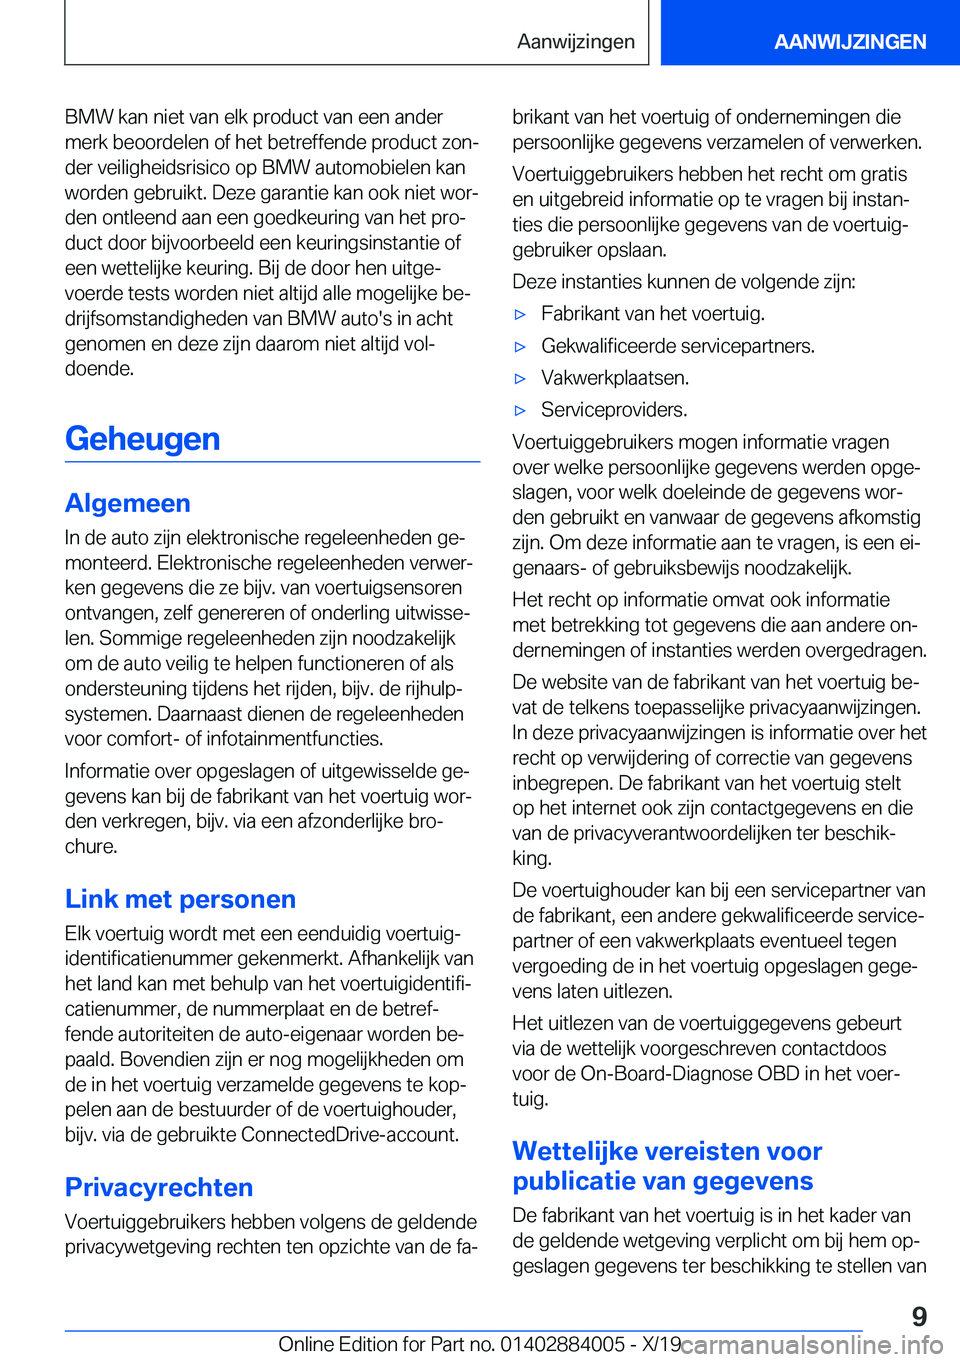 BMW X7 2020  Instructieboekjes (in Dutch) �B�M�W��k�a�n��n�i�e�t��v�a�n��e�l�k��p�r�o�d�u�c�t��v�a�n��e�e�n��a�n�d�e�r�m�e�r�k��b�e�o�o�r�d�e�l�e�n��o�f��h�e�t��b�e�t�r�e�f�f�e�n�d�e��p�r�o�d�u�c�t��z�o�nj
�d�e�r��v�e�i�l�i�g�